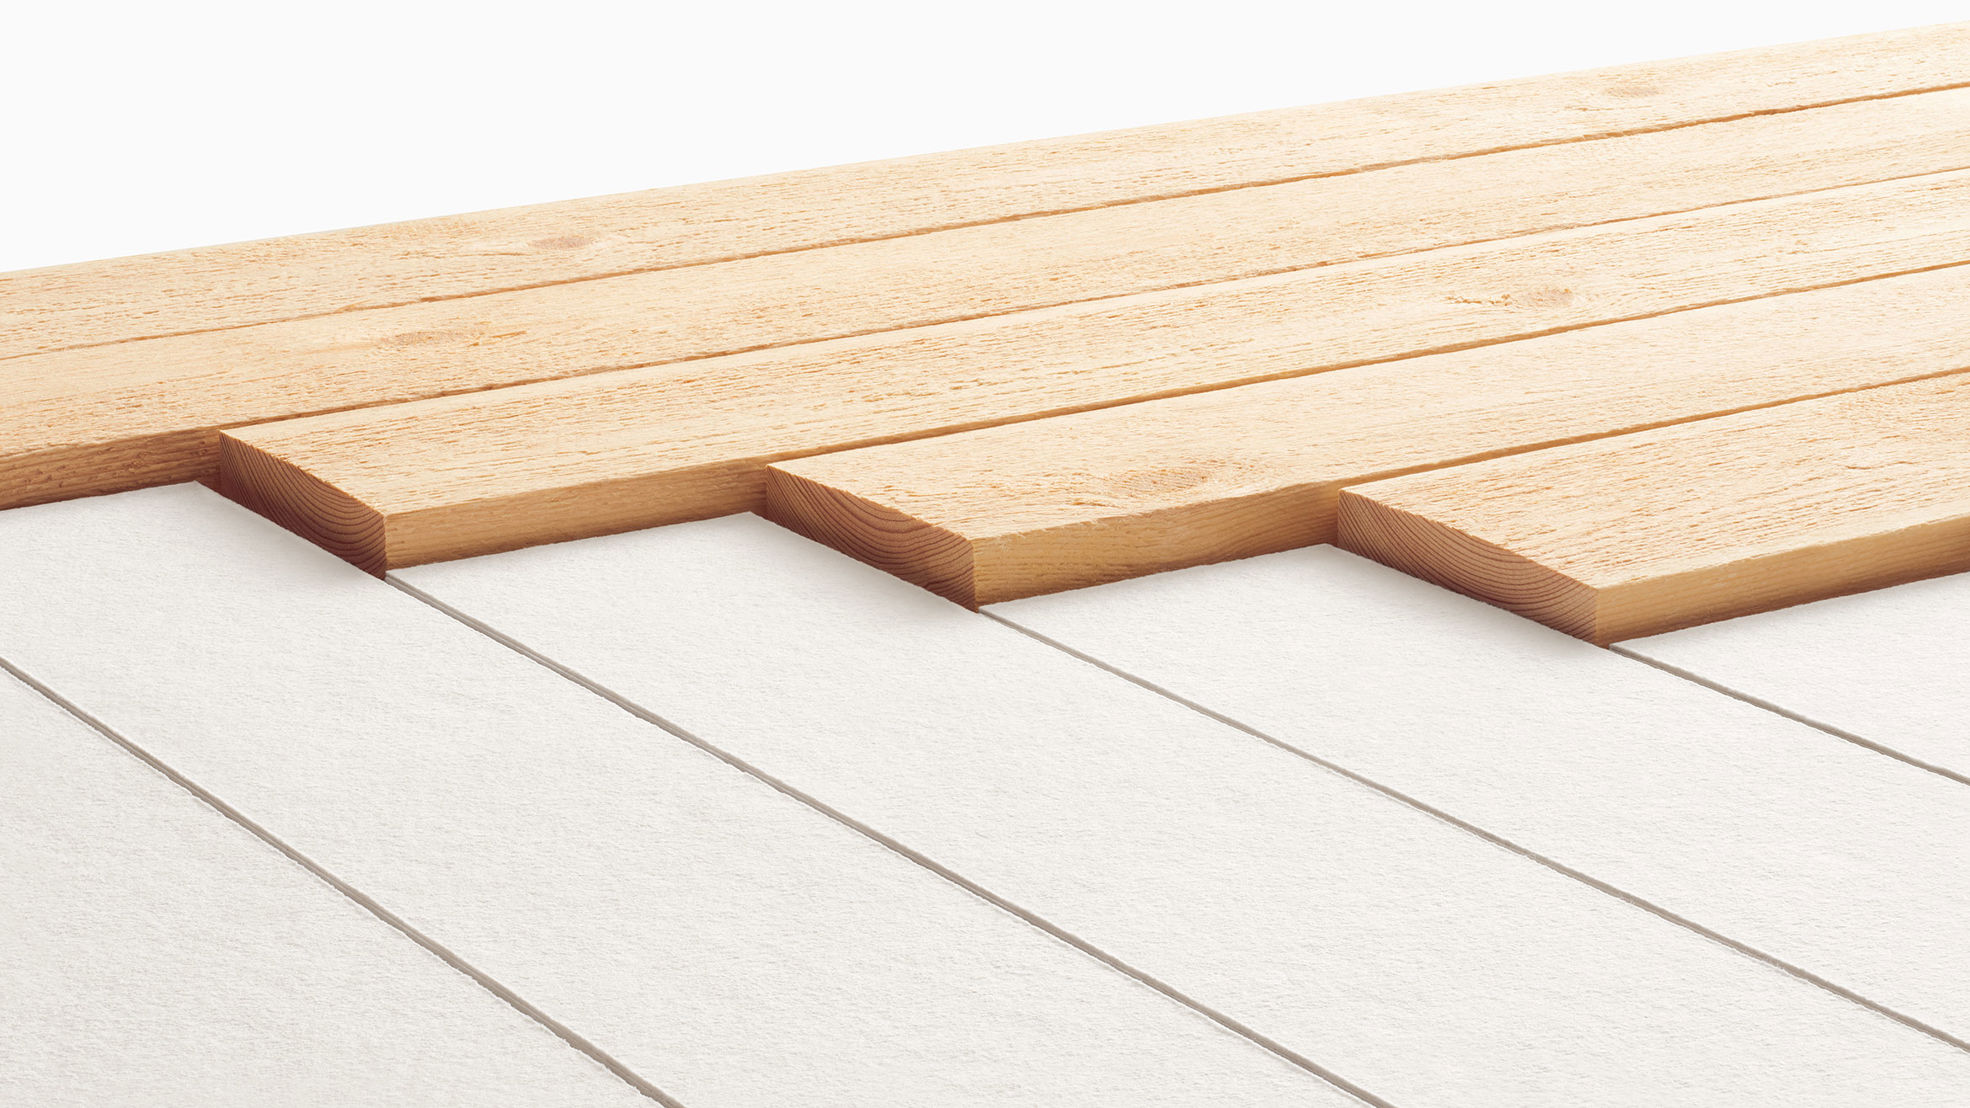 Pulp and sawn timber diagonal